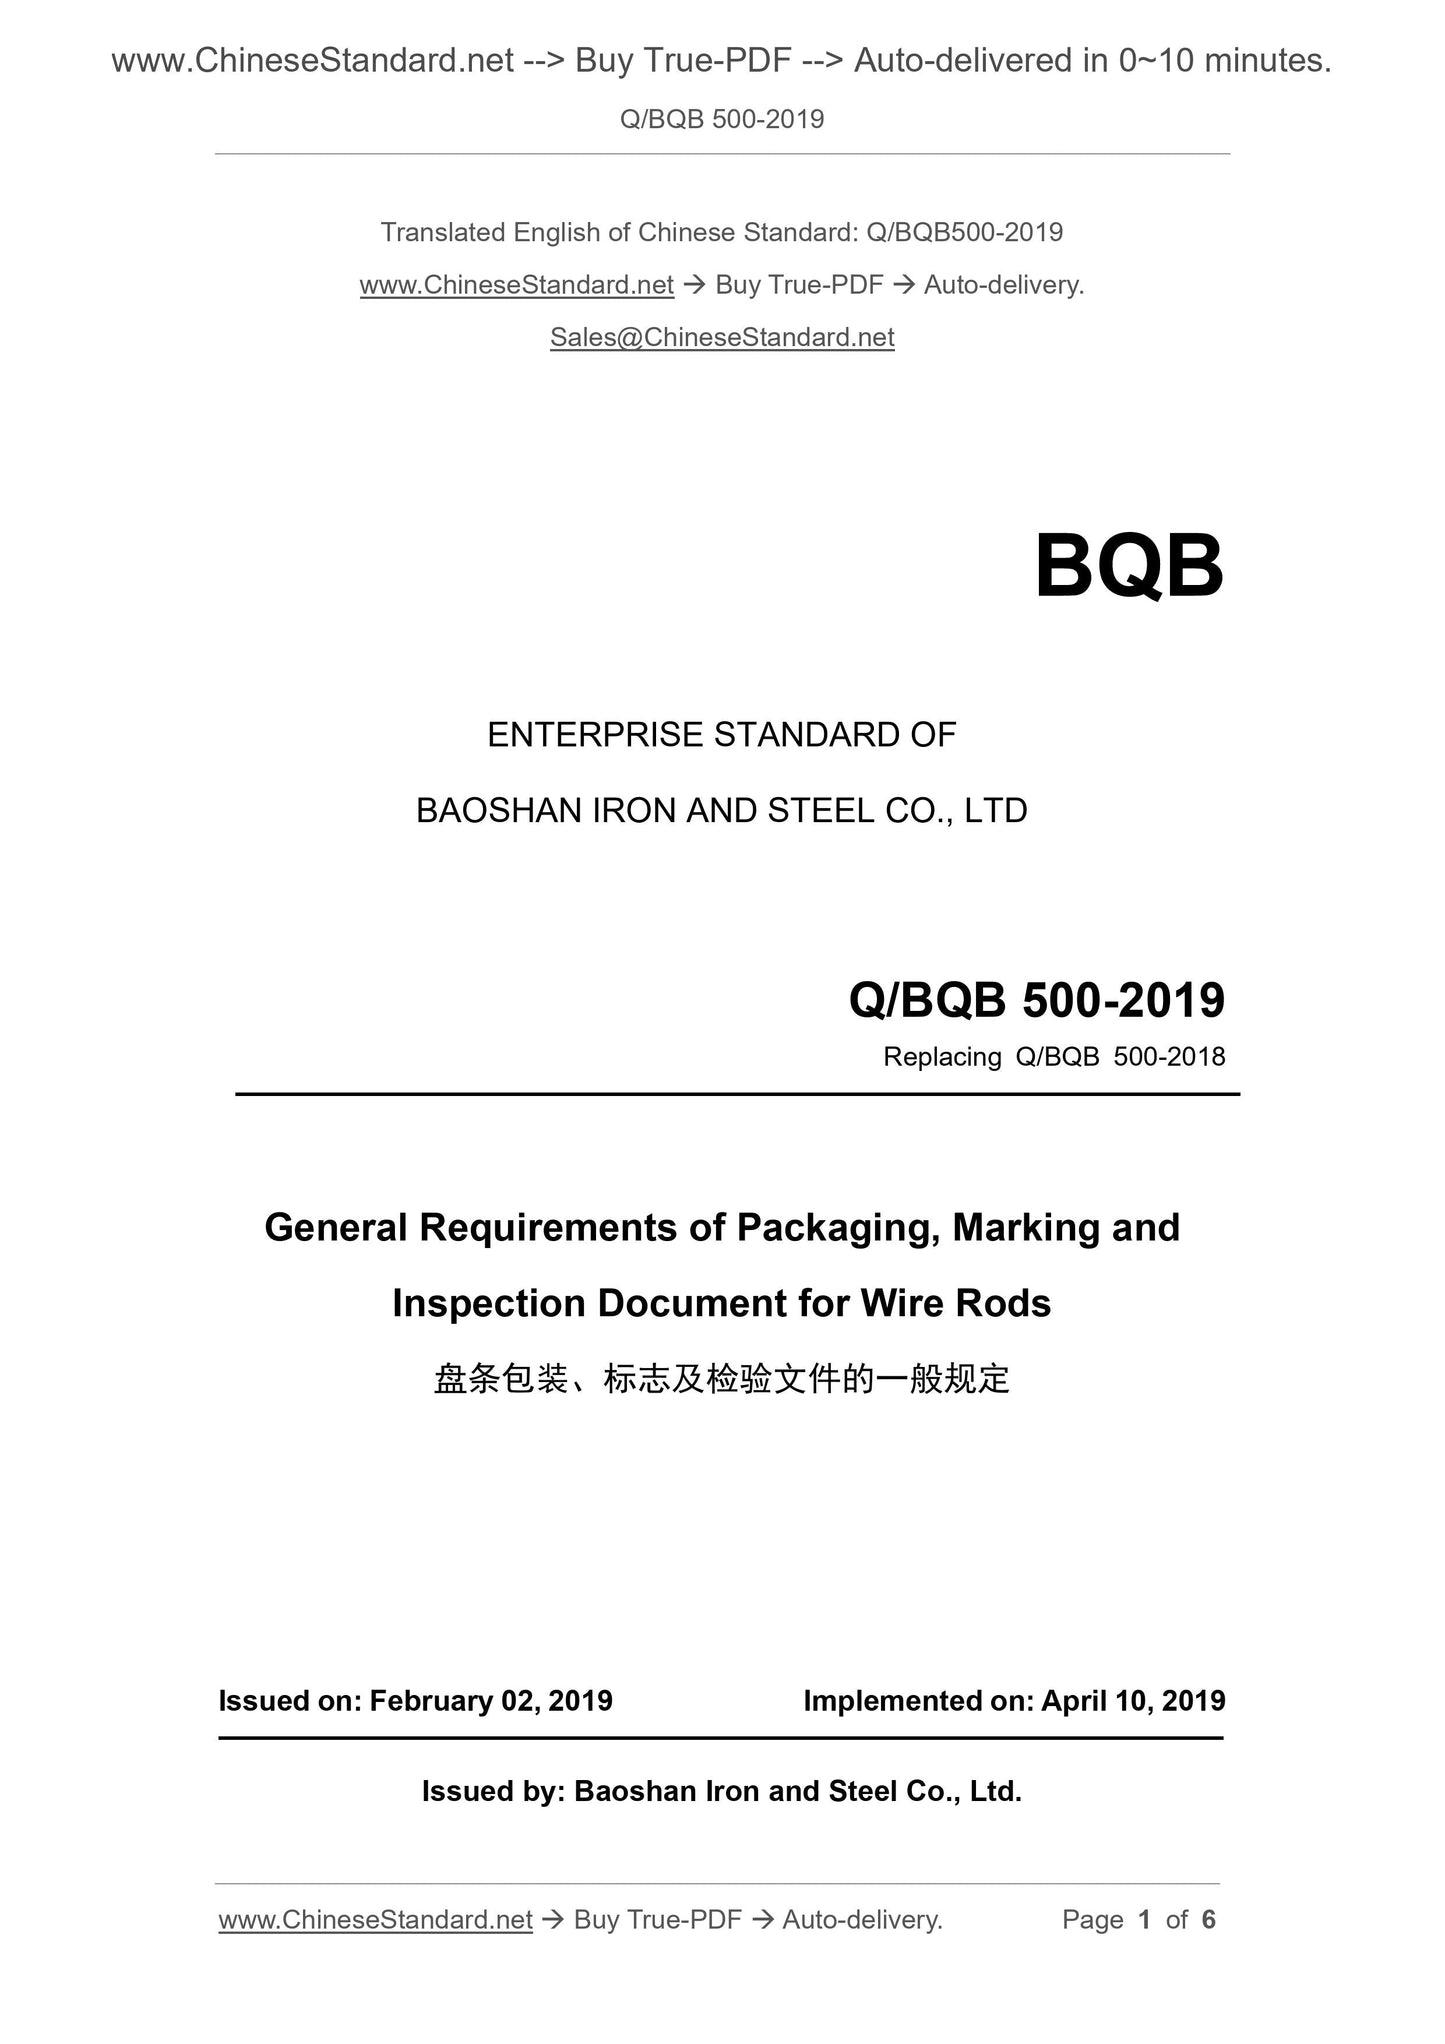 Q/BQB 500-2019 Page 1